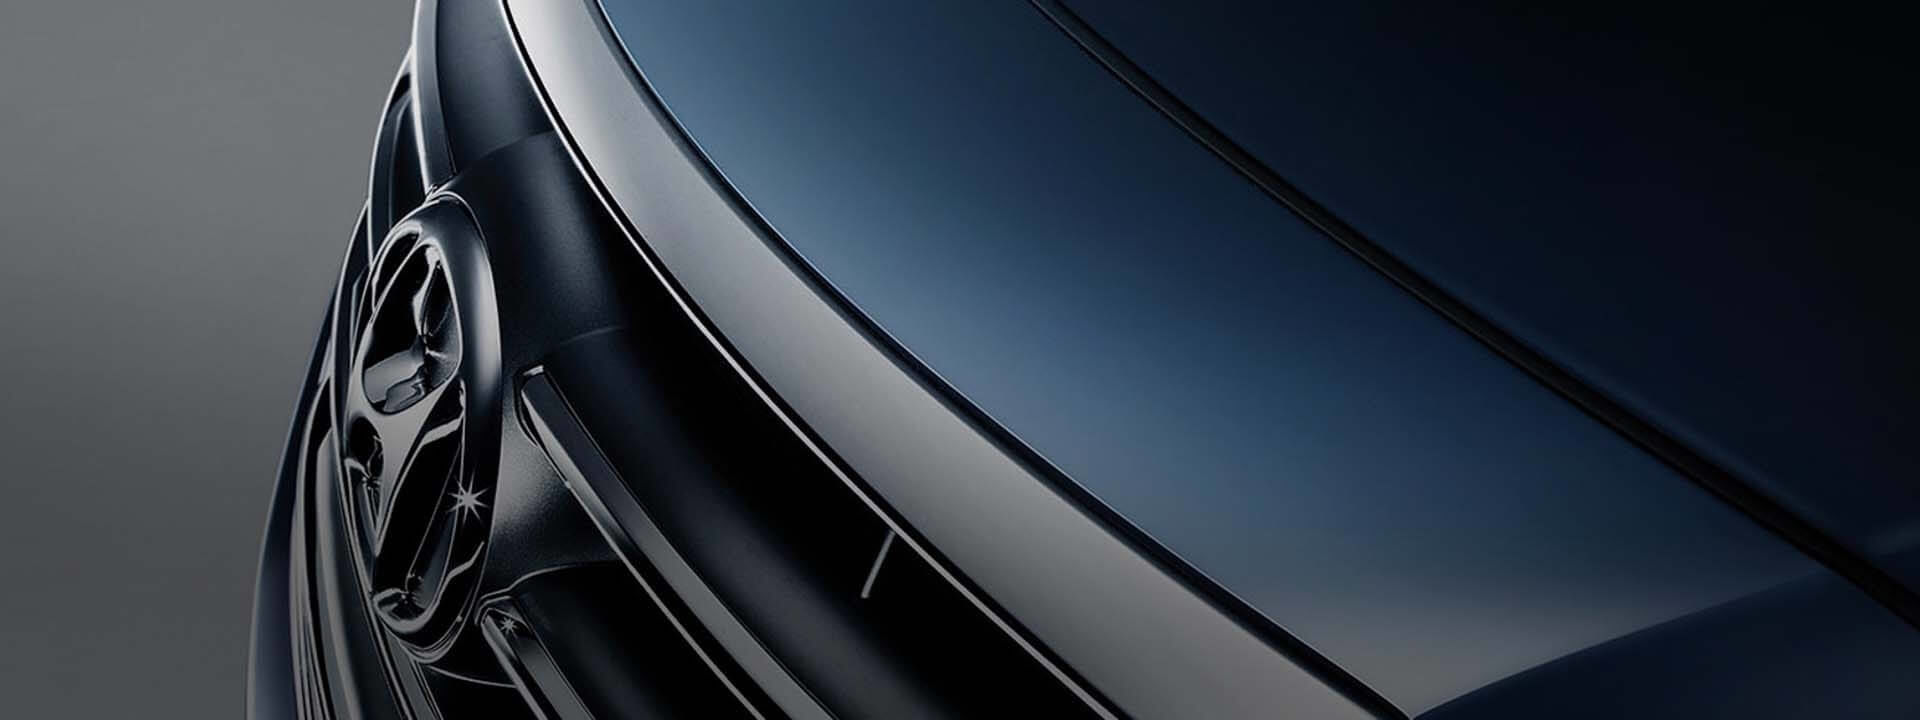 Пристальный взгляд на переднюю часть автомобиля Hyundai с его логотипом и решеткой